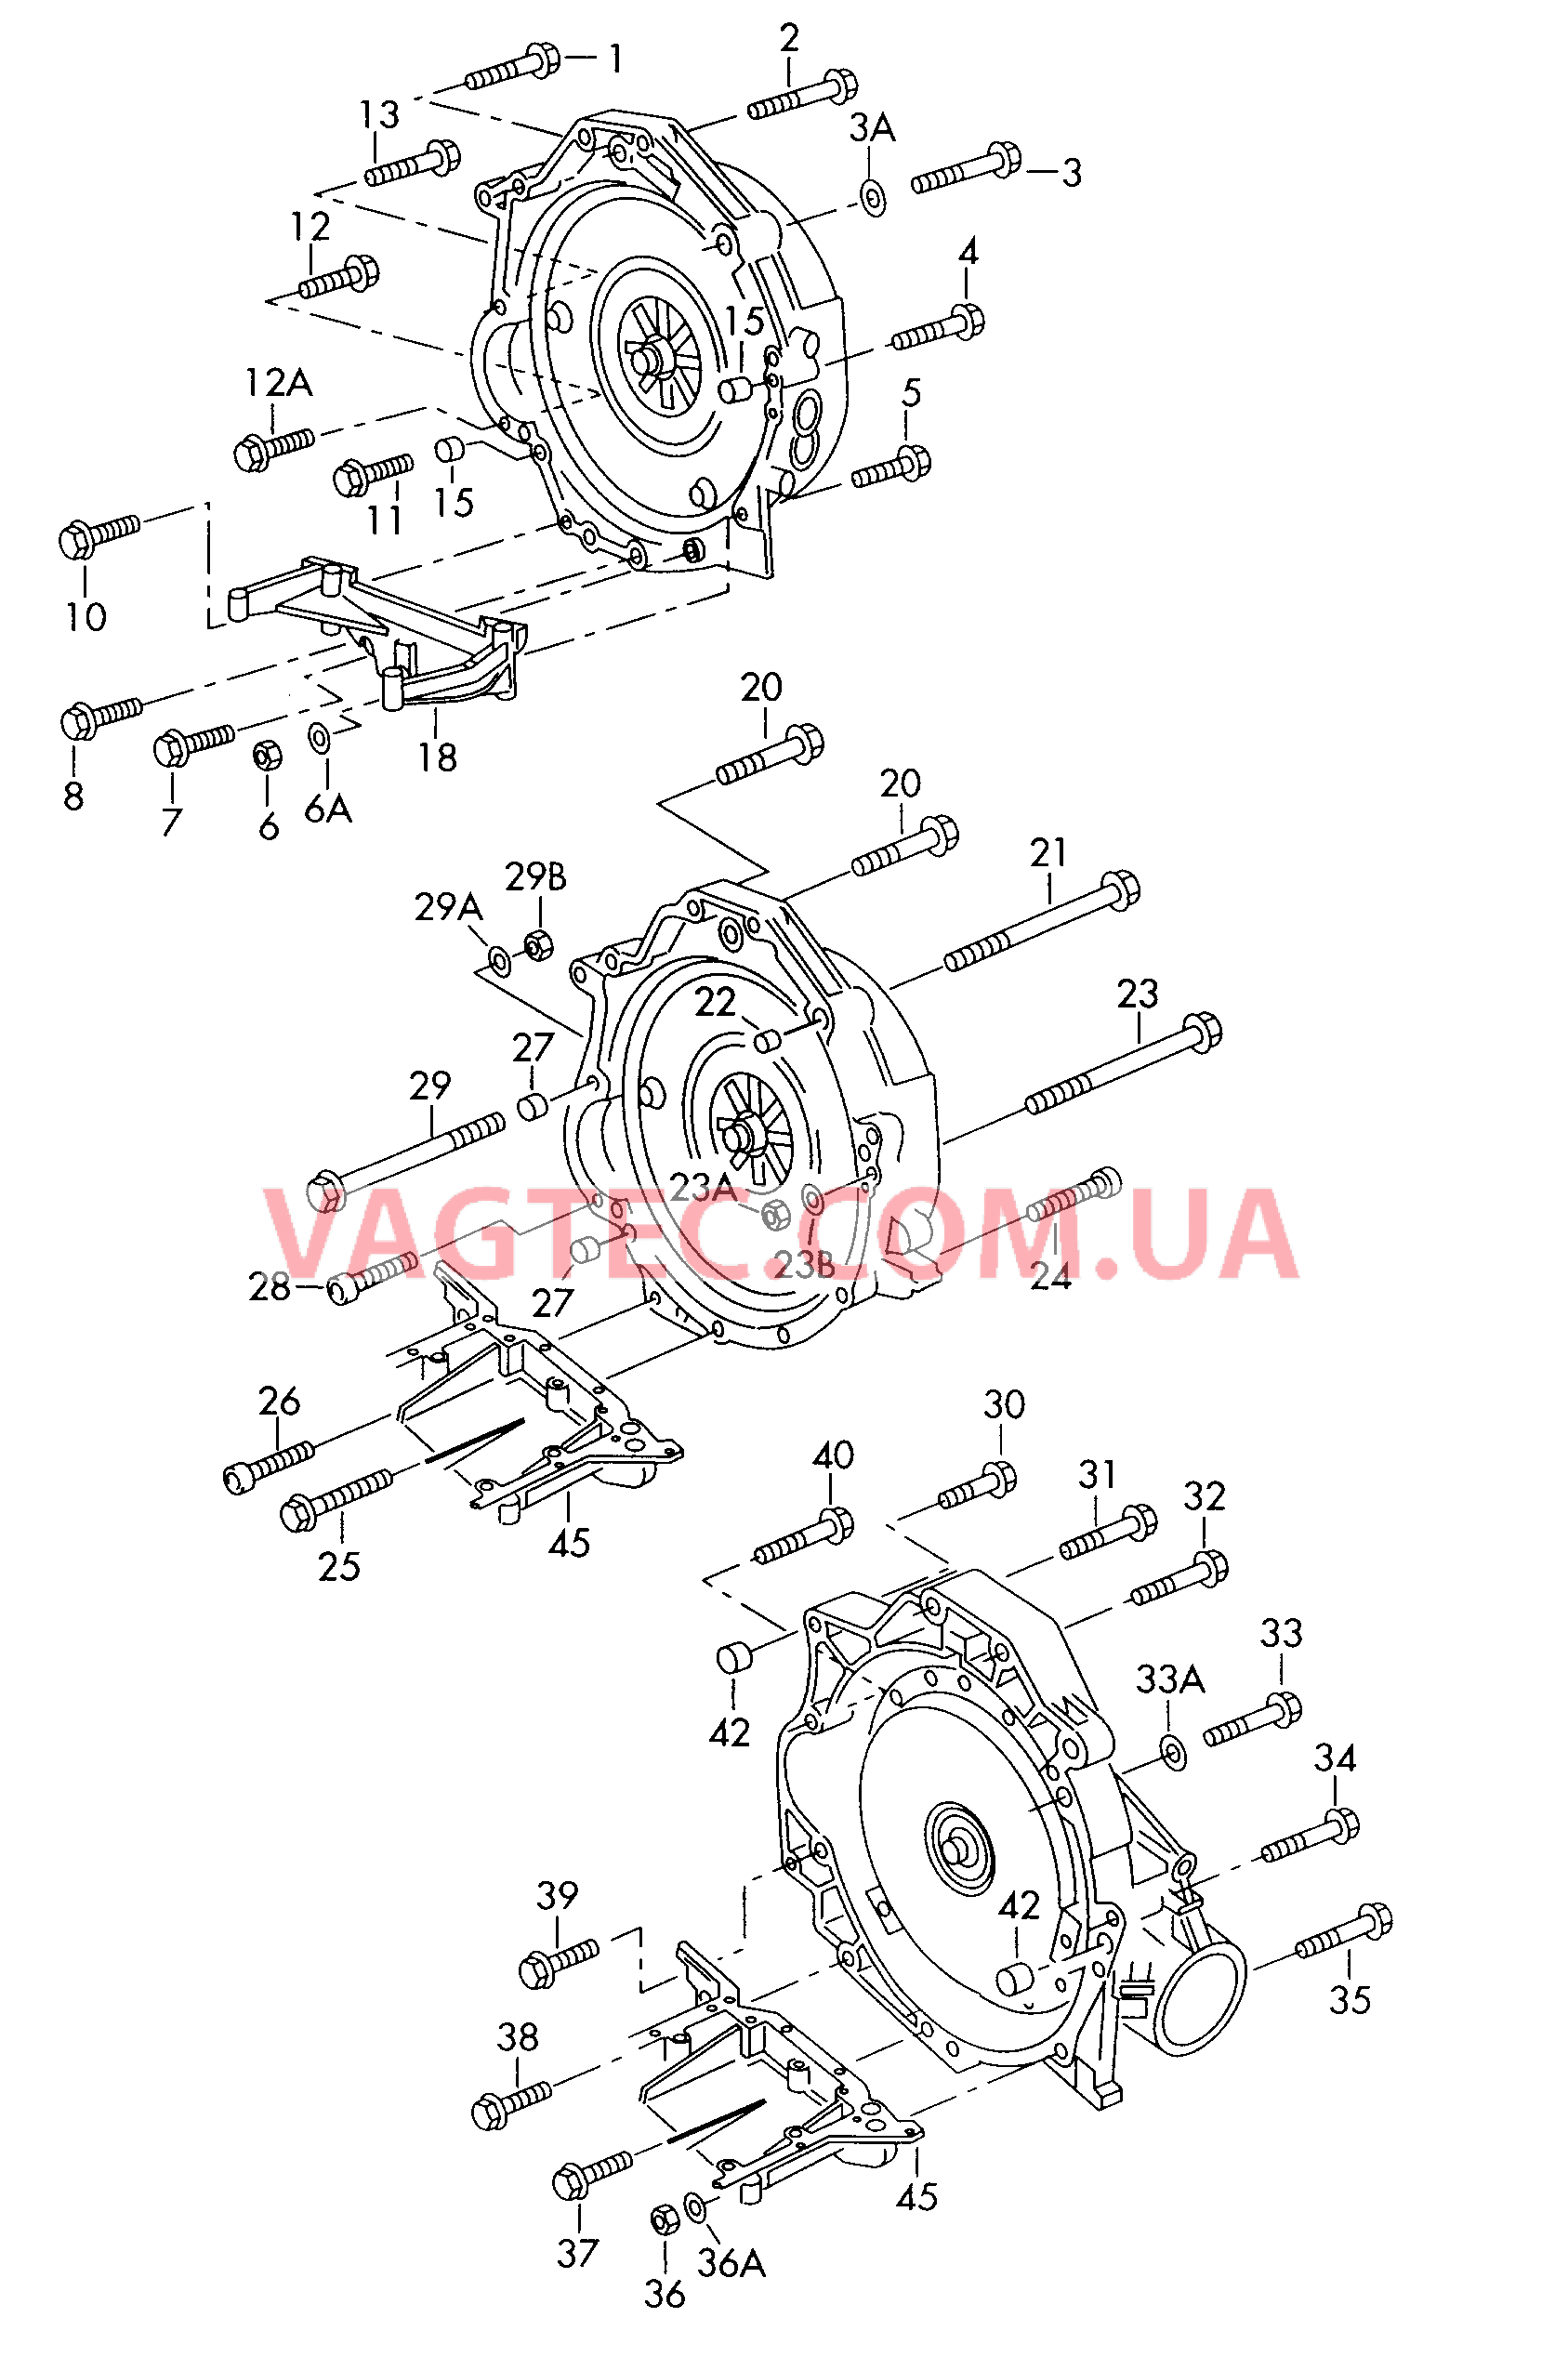  VW РASSAT Детали крепления для двигателя и КП  для 4-ступенчатой АКП для 5-ступенчатой АКП  для VOLKSWAGEN Passat 2000